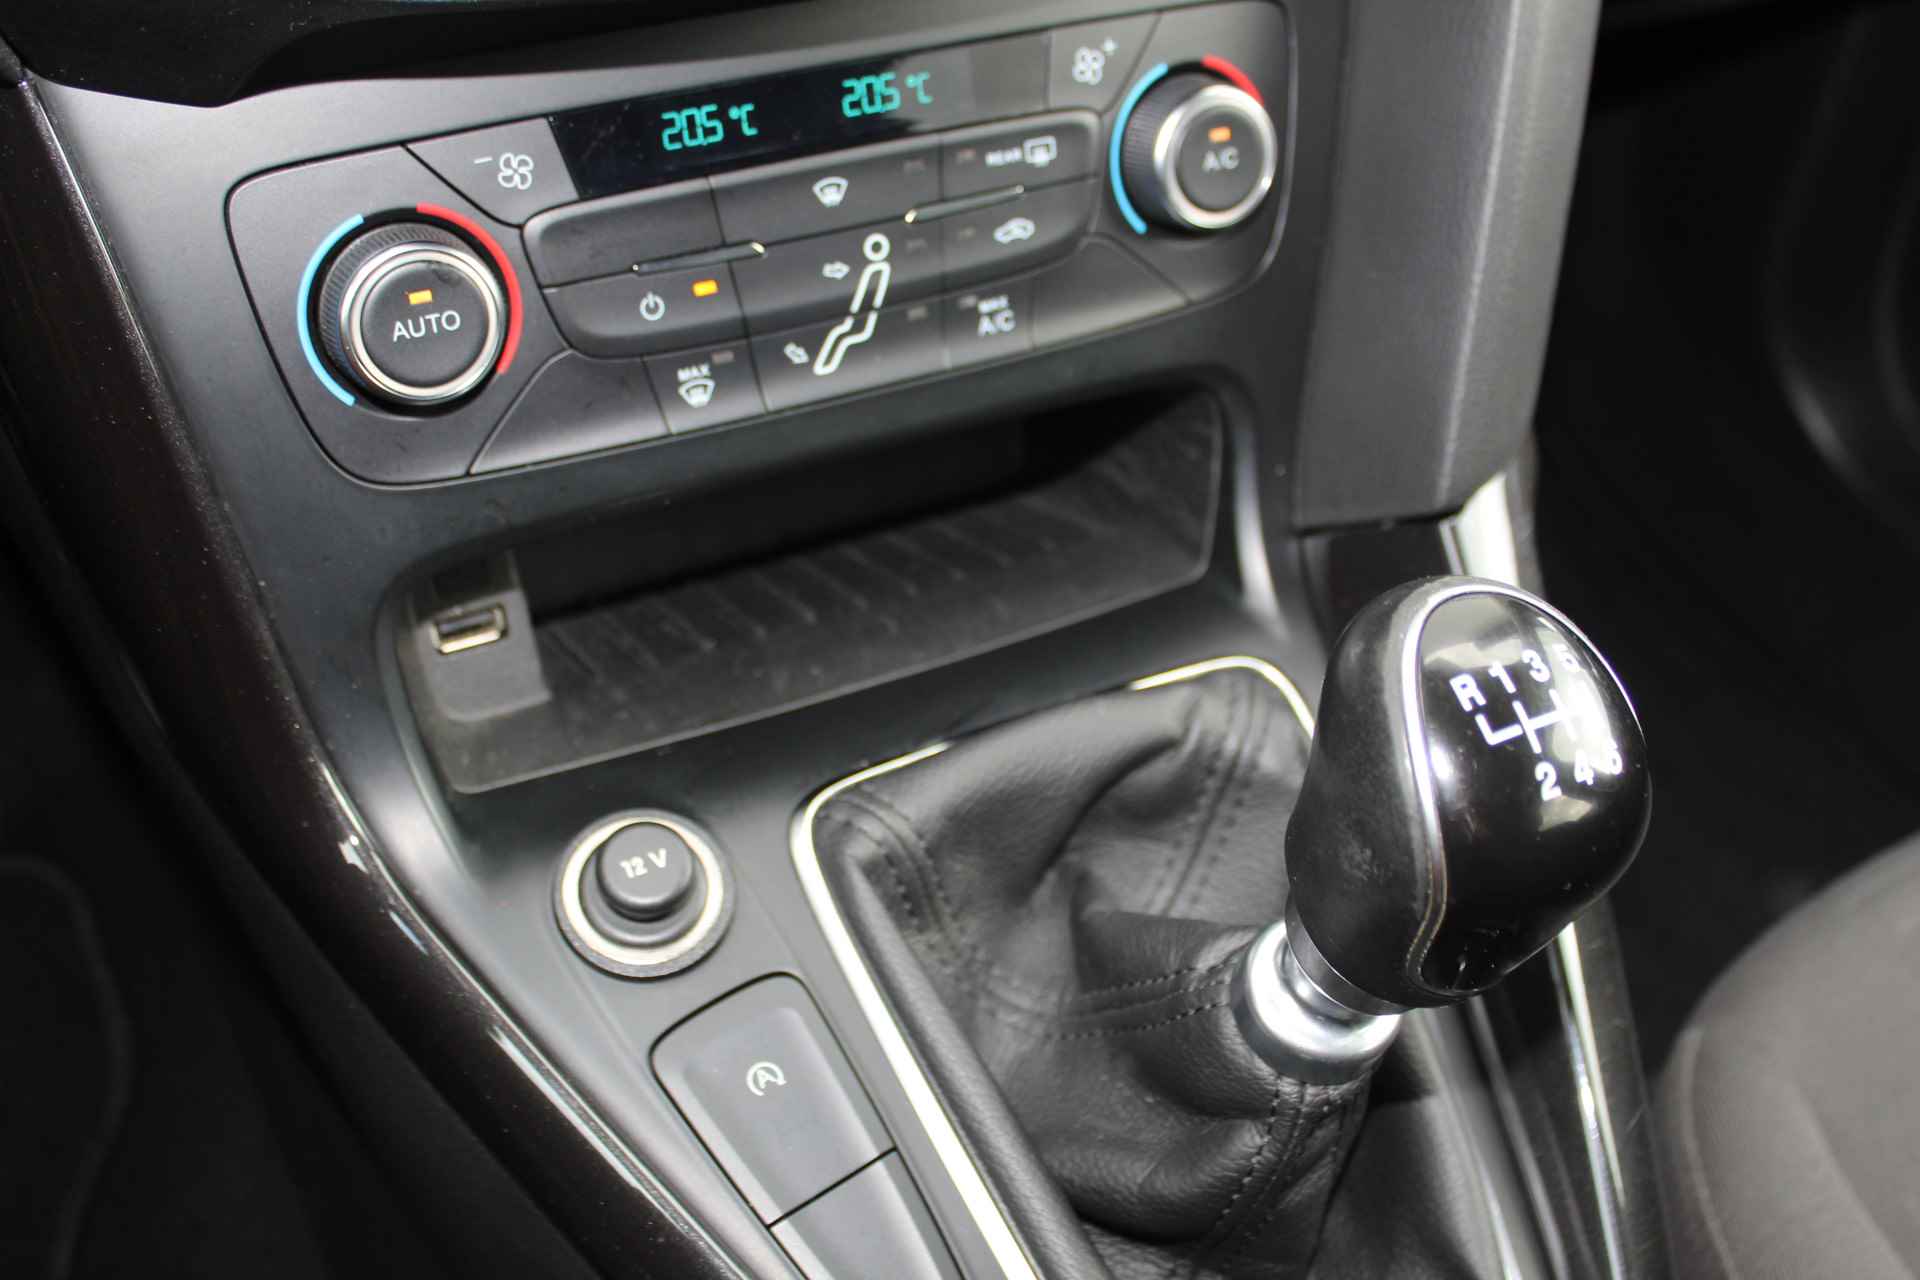 Ford Focus 1.0-125pk Titanium. Fijn rijdende en goed onderhouden Ford Focus hatchback. Volautm. airco dual, cruise control, multifunctioneel stuurwiel, boordcomputer, navigatie, telefoonvoorb., metallic lak, LM wielen, elektr. ramen en spiegels etc. - 26/38